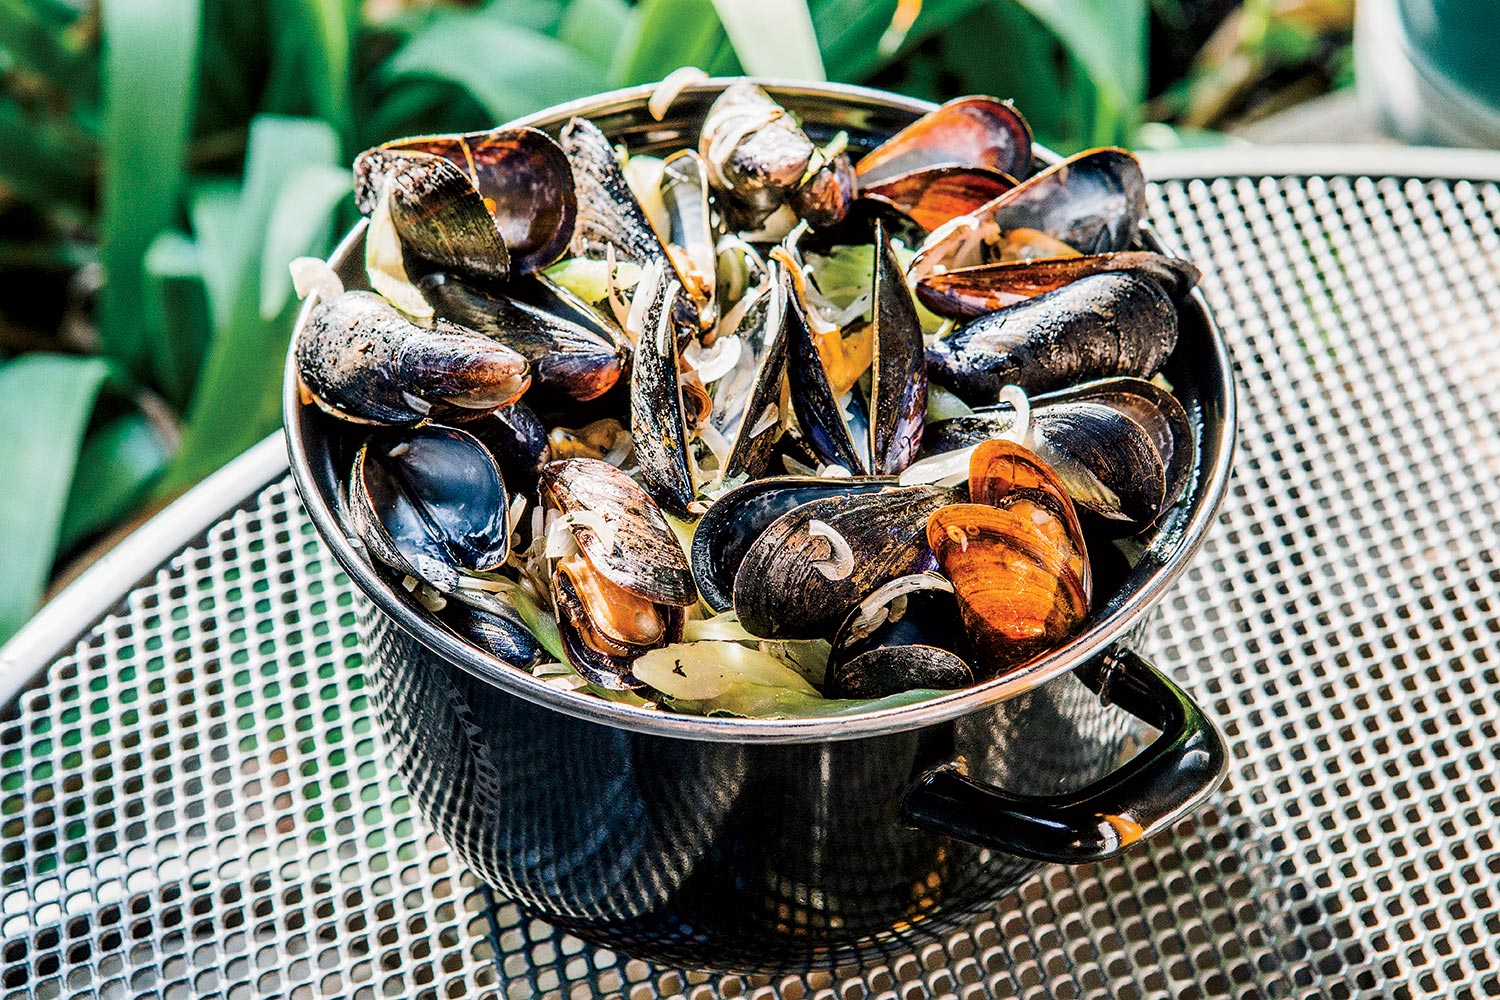 Hopleaf’s Belgian-Style Mussels in Beer